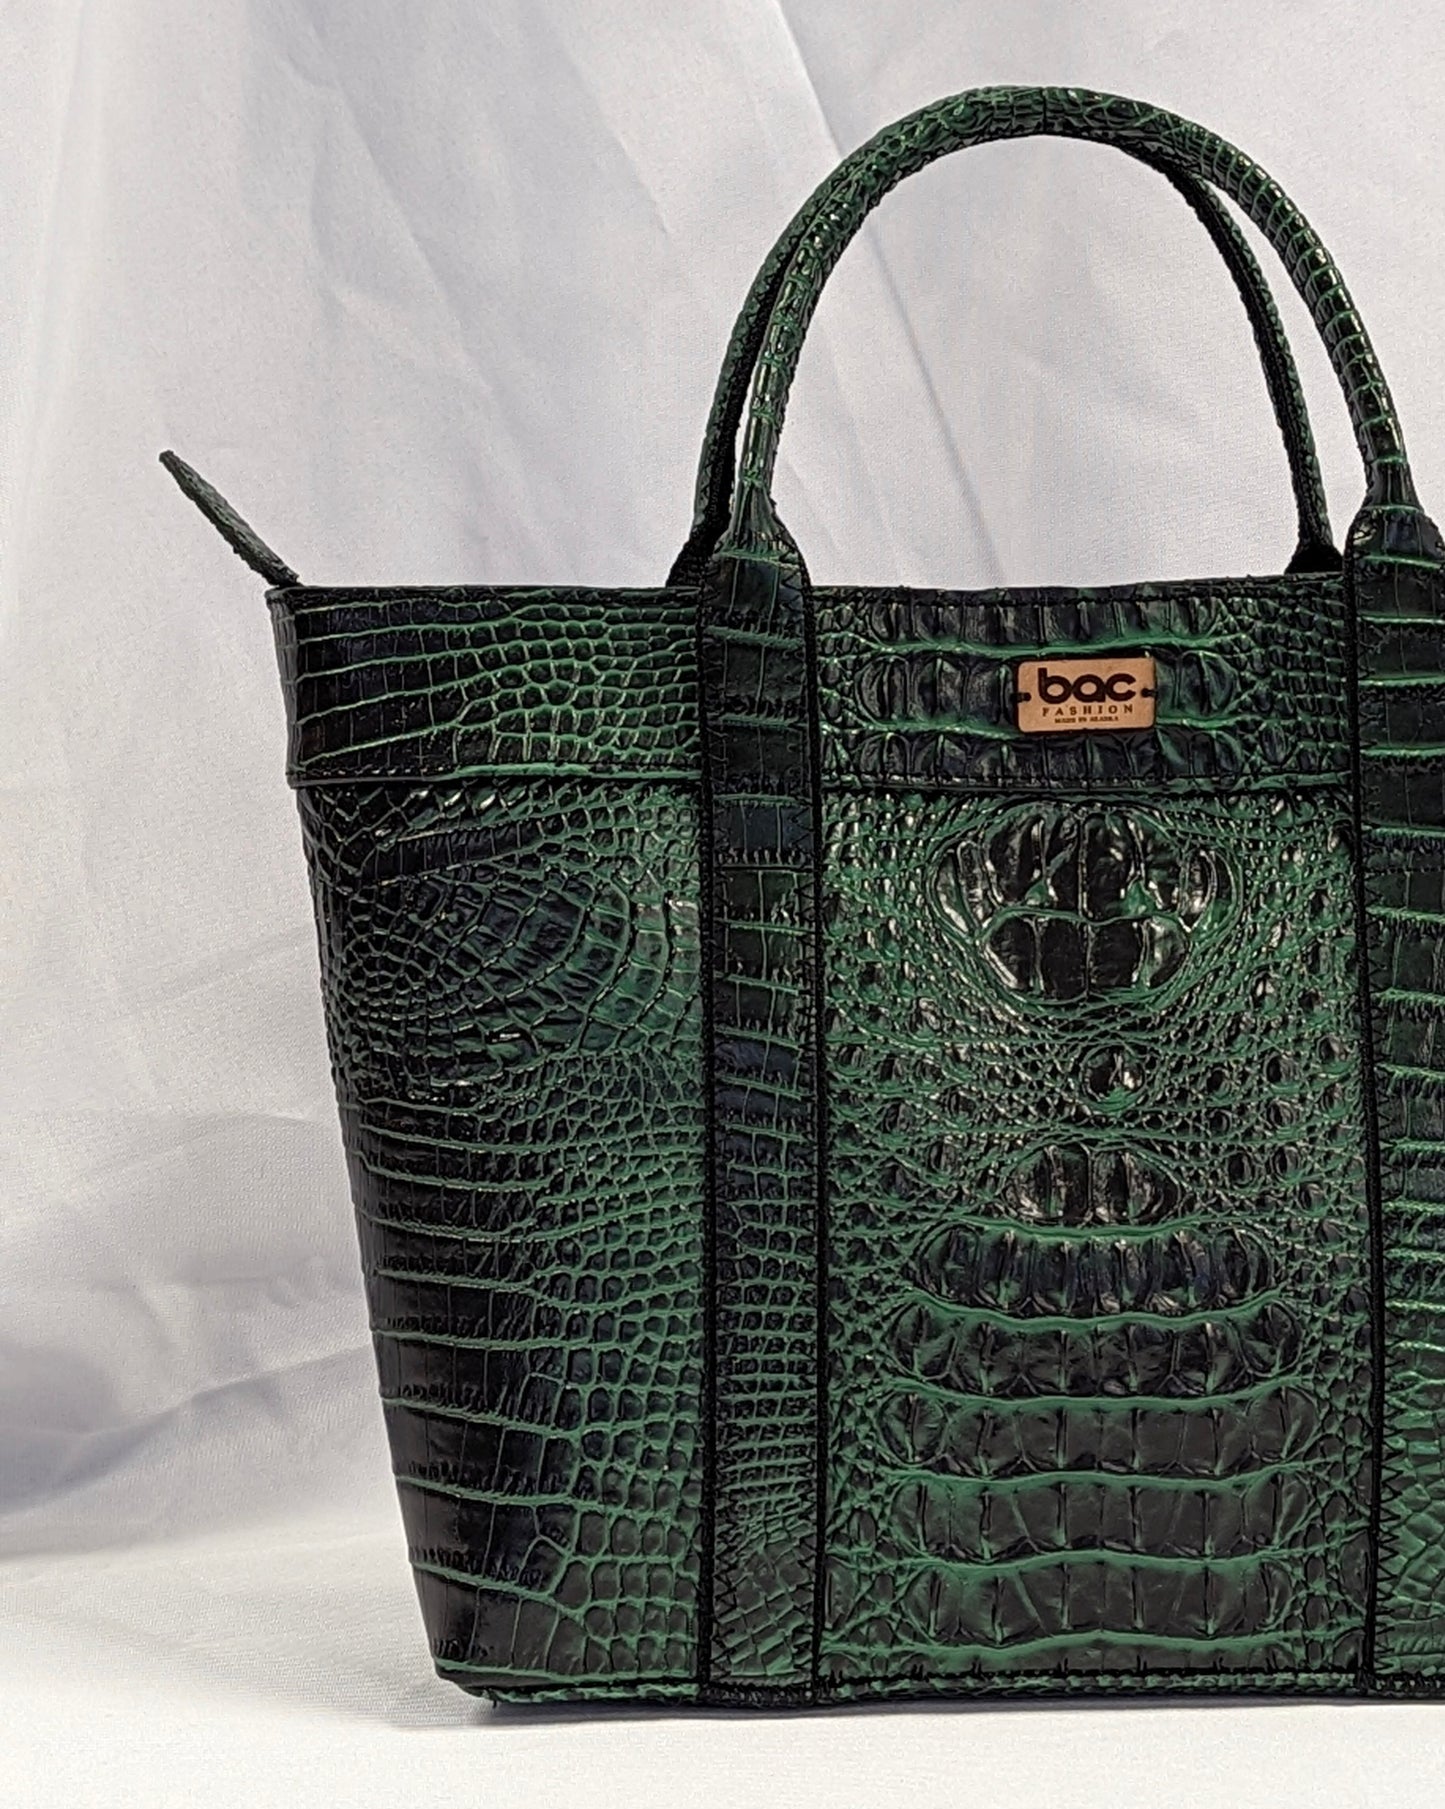 alligator purse